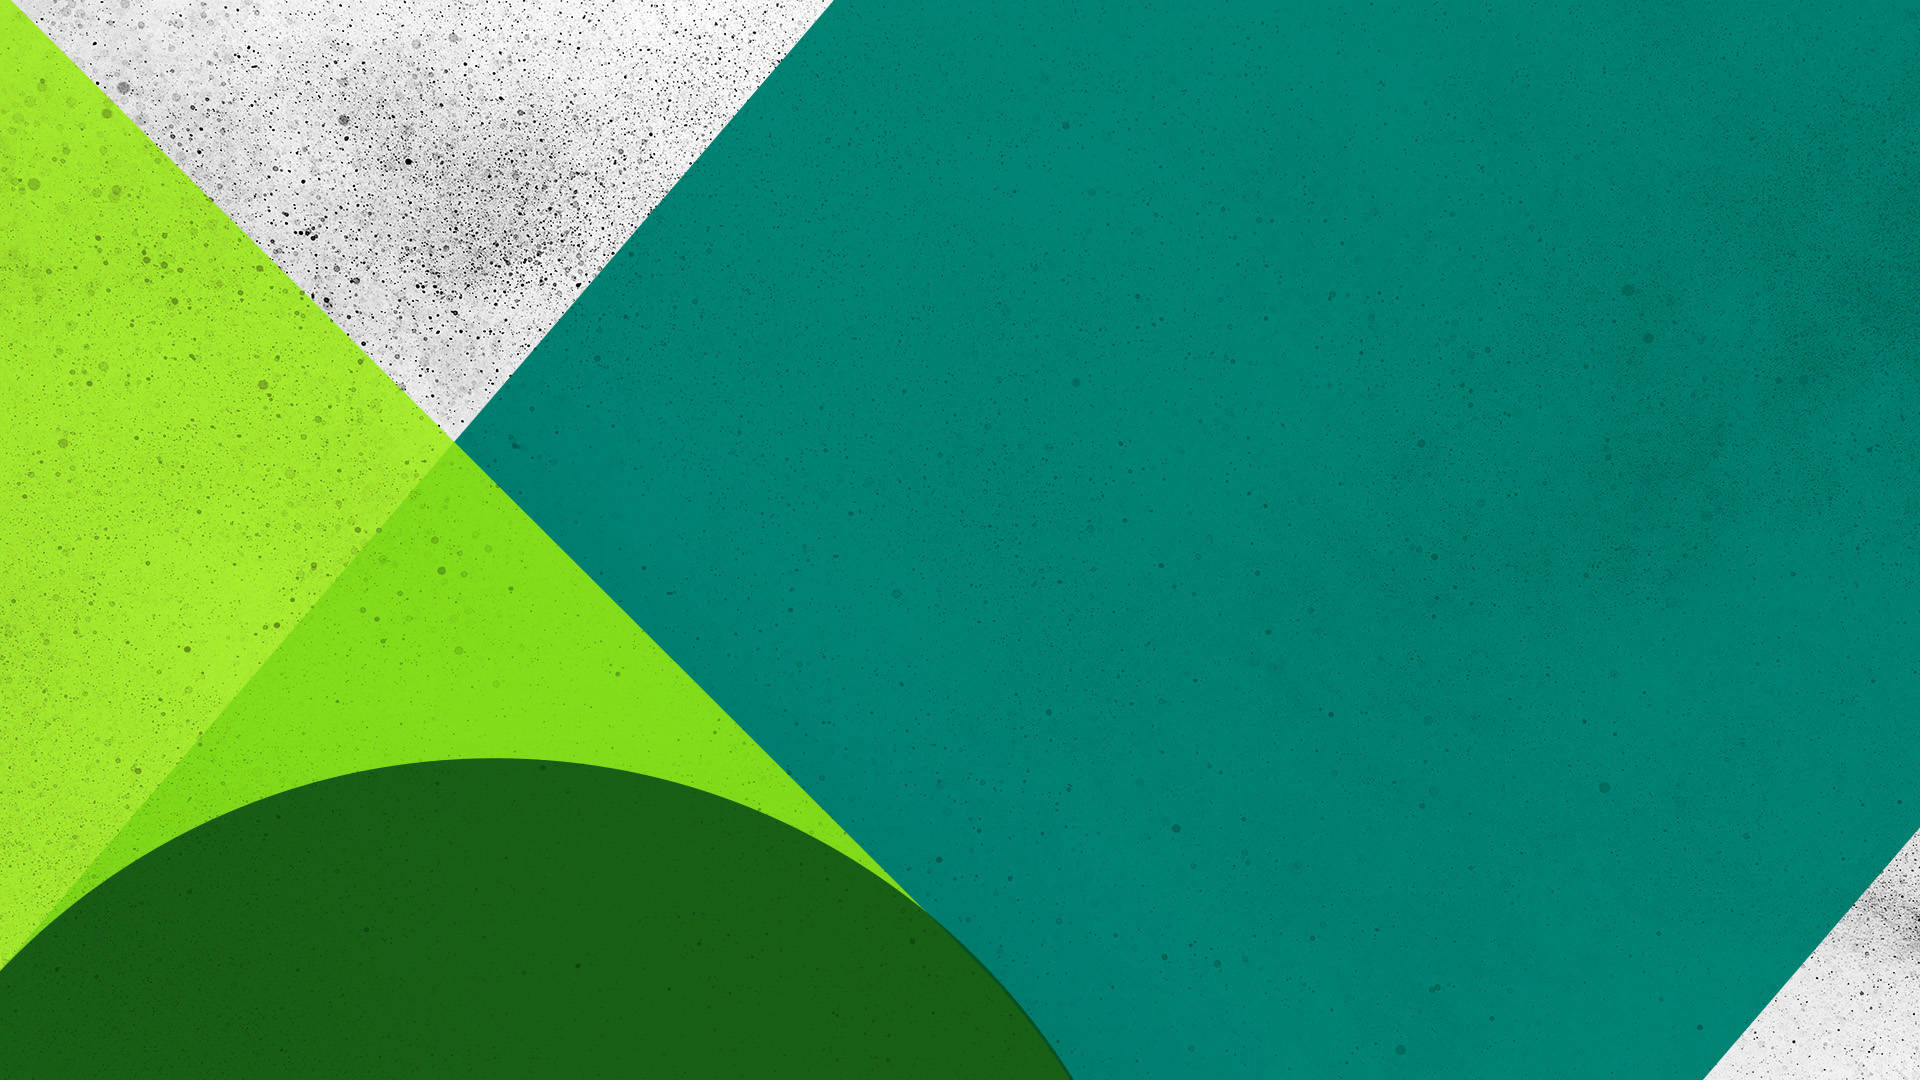 Microsoft Teams Shades Of Green